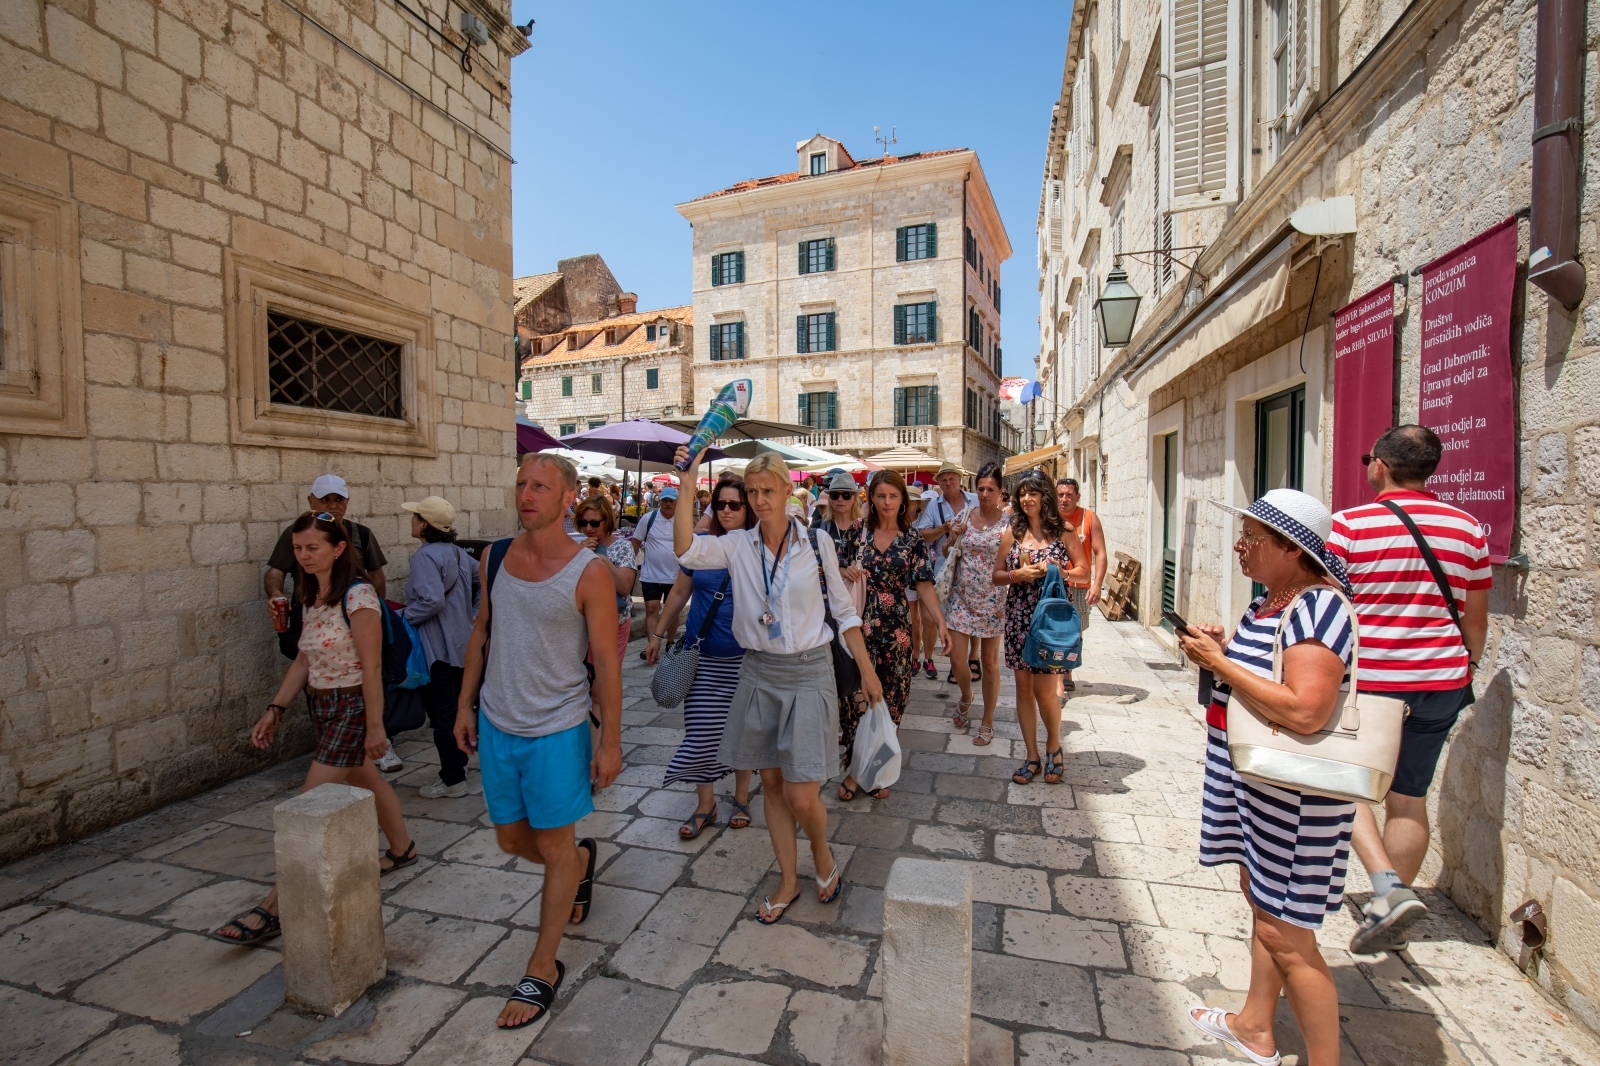 09.07.2019., Stara gradska jezgra, Dubrovnik - Guzve na ulicama Dubrovnika tijekom turisticke sezone
Photo: Grgo Jelavic/PIXSELL